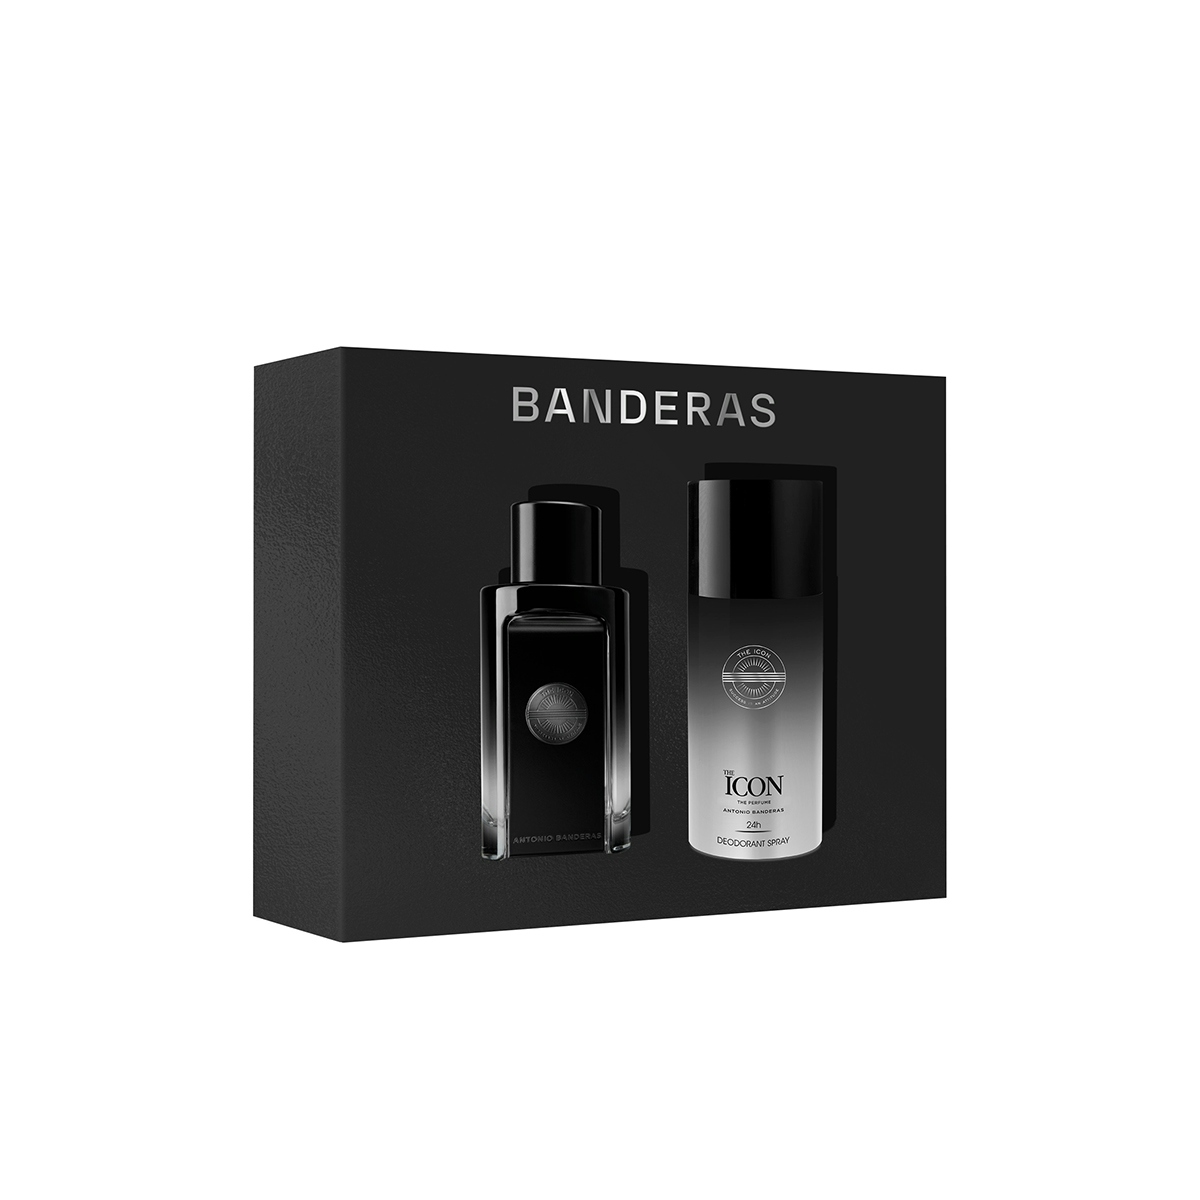 Estuche Perfume Antonio Banderas The Icon Edp + Desodorante